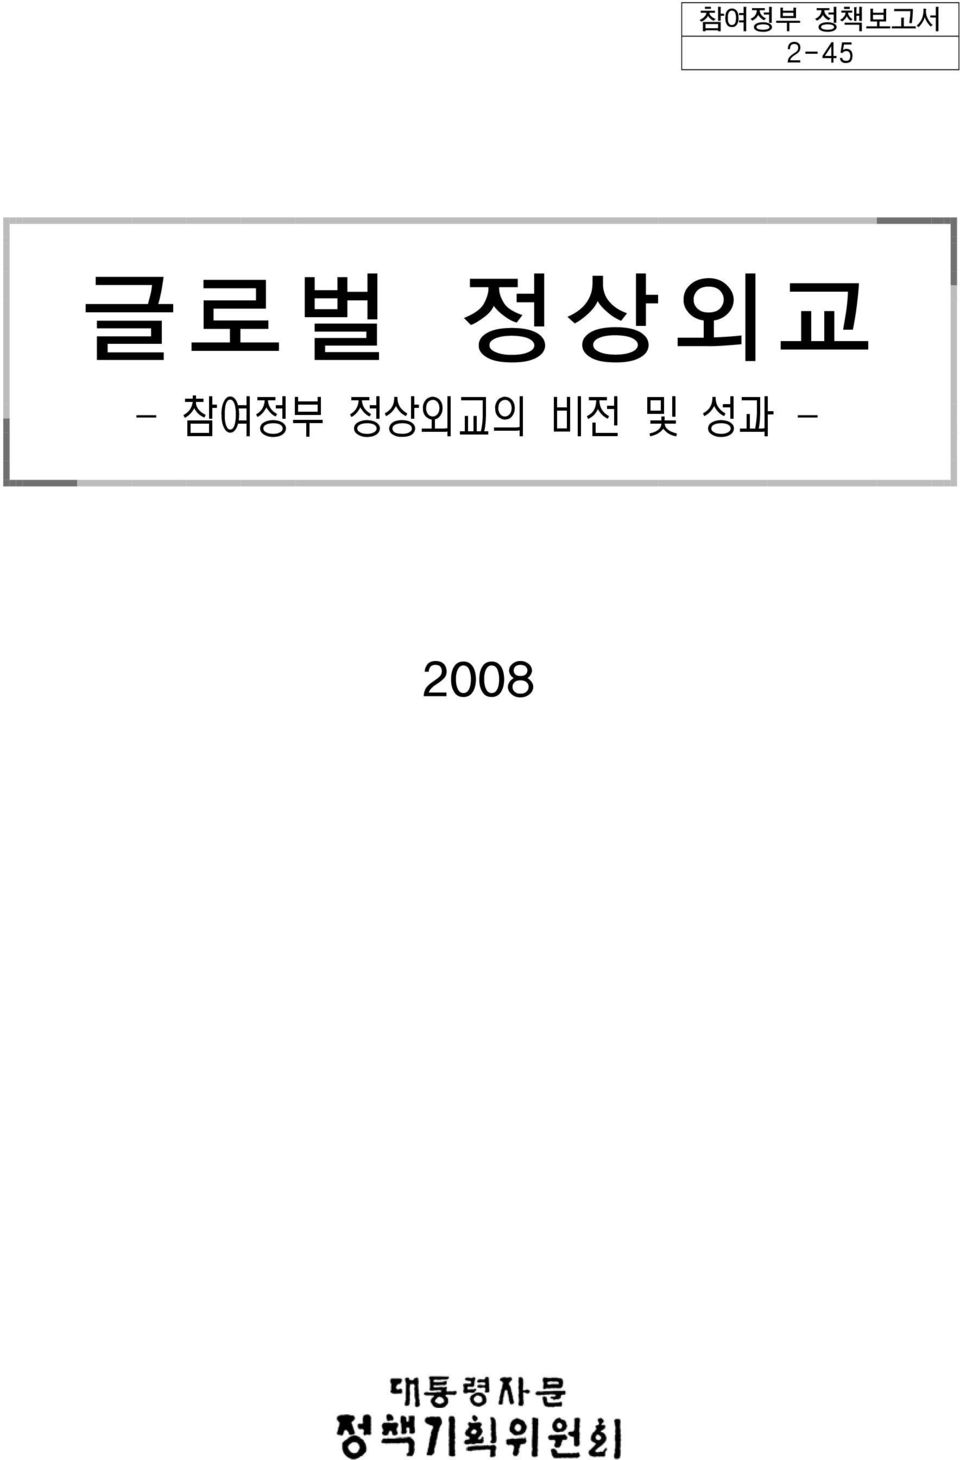 초안자료 <집필 참여자> 안보전략비서관: 박 선 원